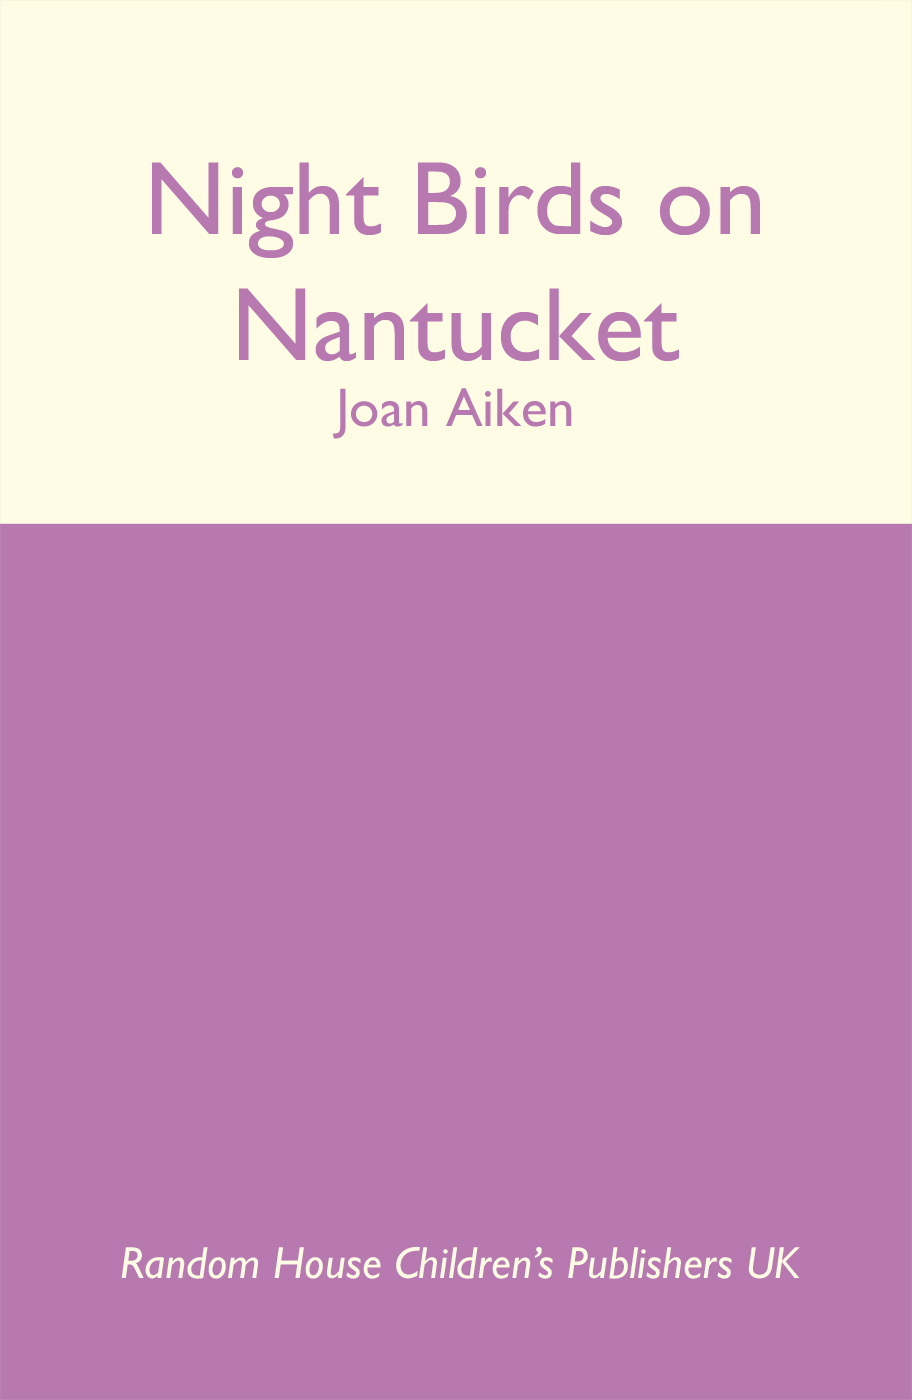 Night Birds On Nantucket (2004) by Joan Aiken